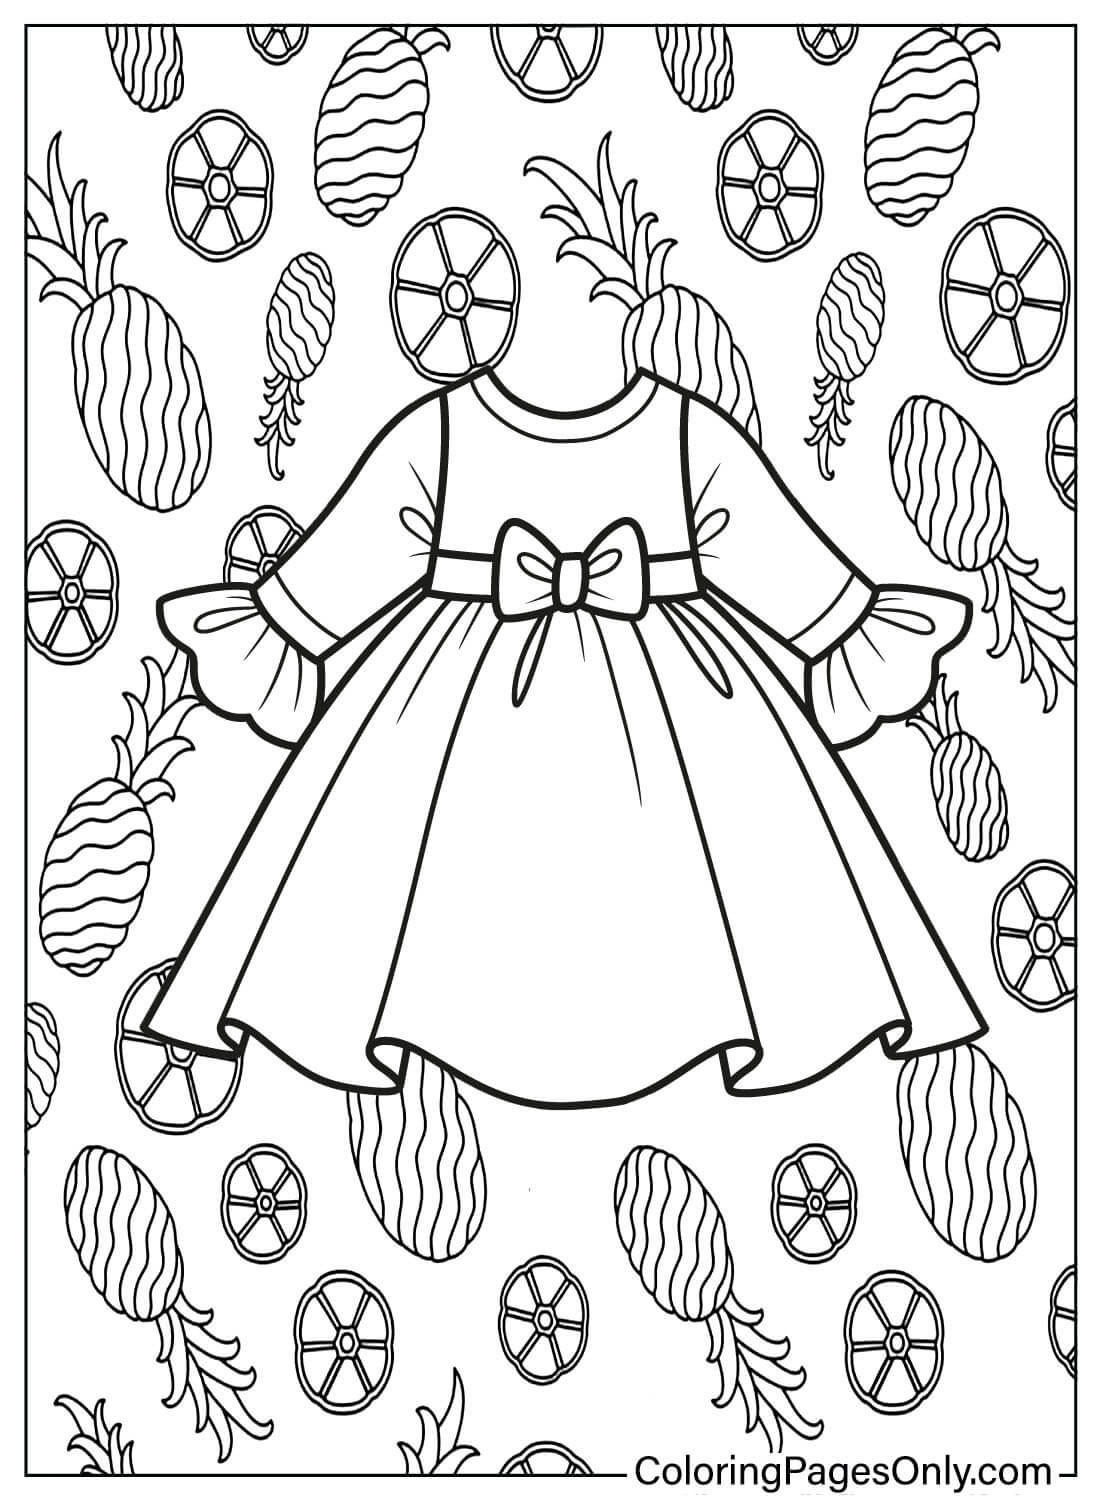 Dibujo para colorear Vestido de bebé gratis de Baby Dress